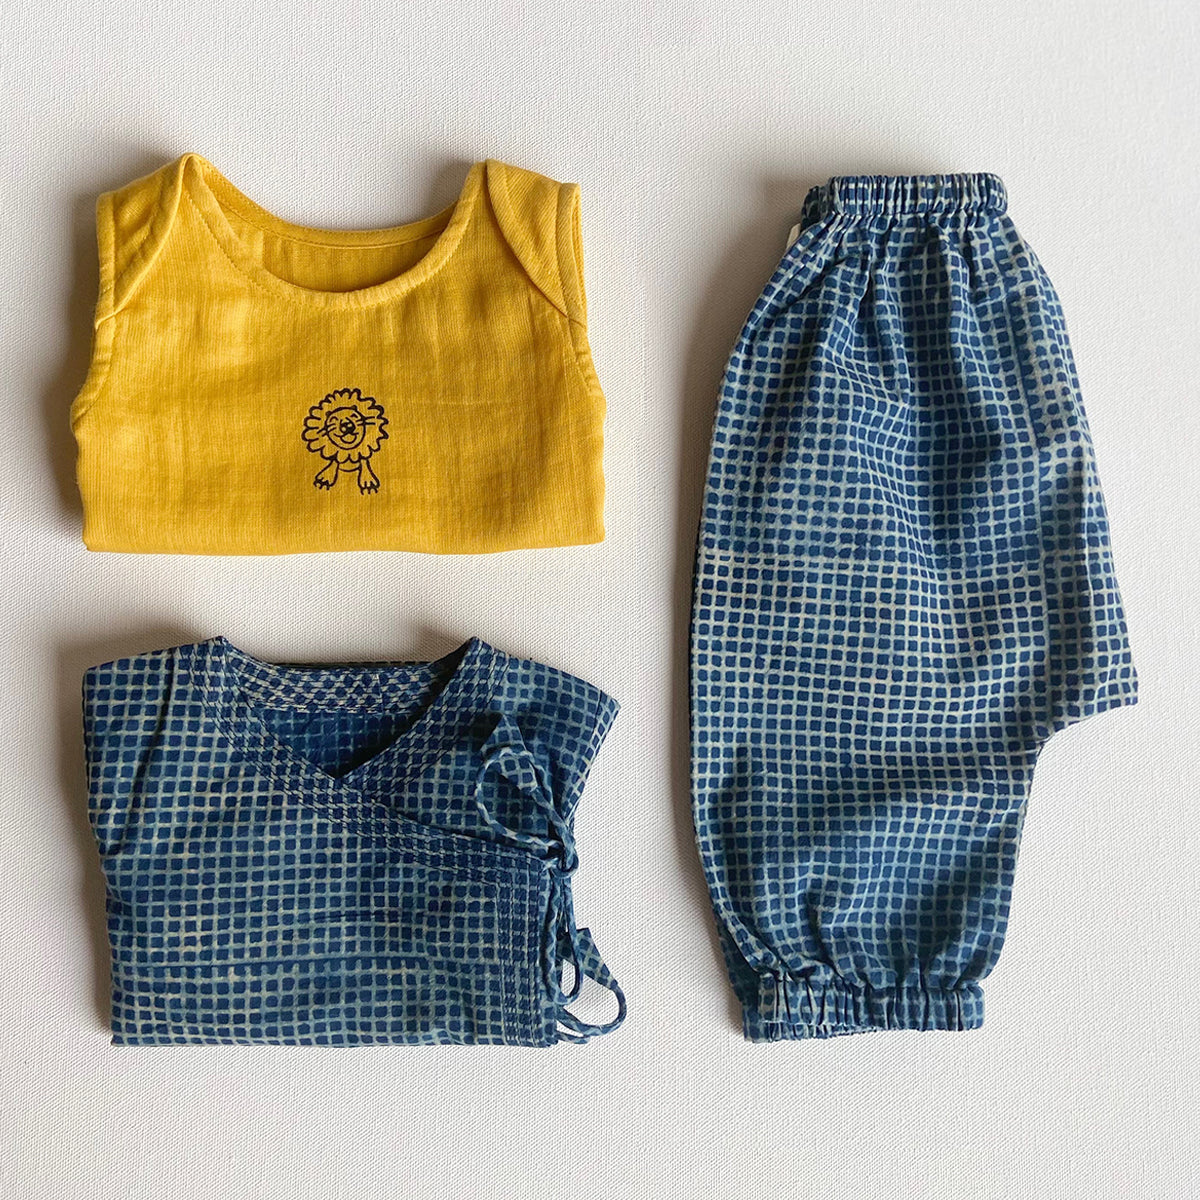 Organic Cotton Zoo Bag - Zoo Yellow Jhabla + Indigo Checks Angarakha and Indigo Checks Pajama Pants Set